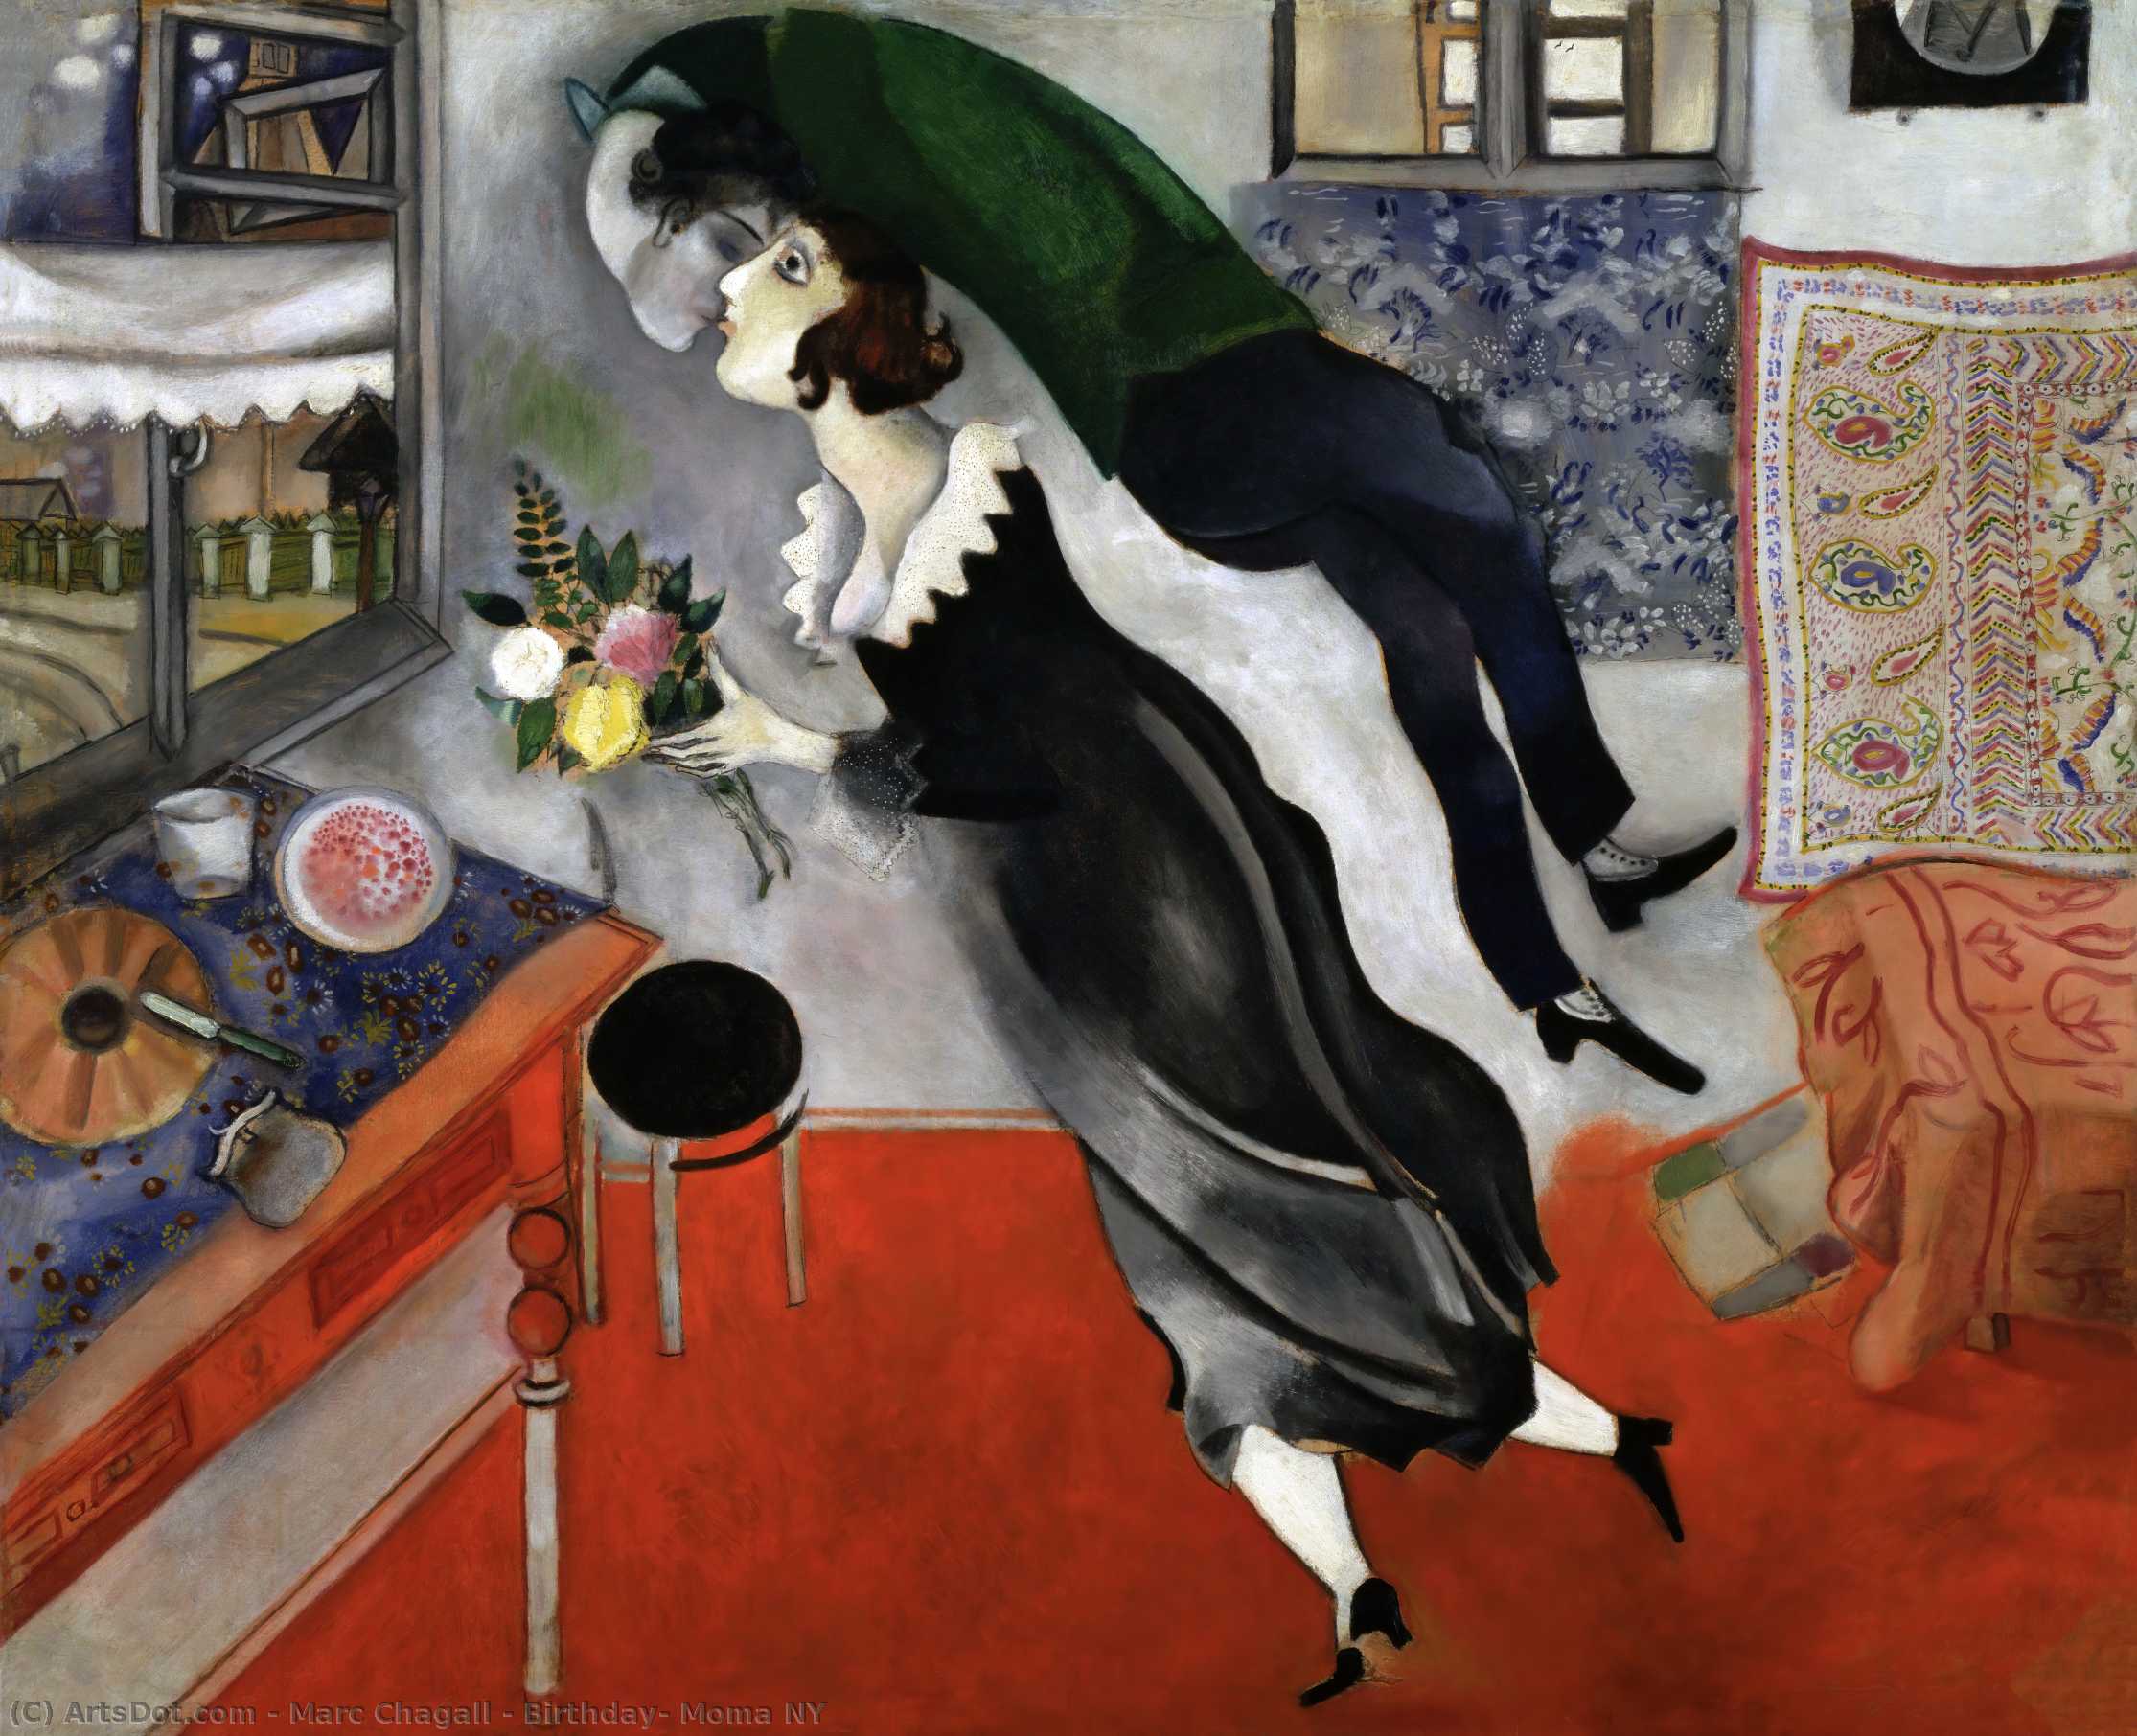 WikiOO.org - Encyclopedia of Fine Arts - Maľba, Artwork Marc Chagall - Birthday, Moma NY